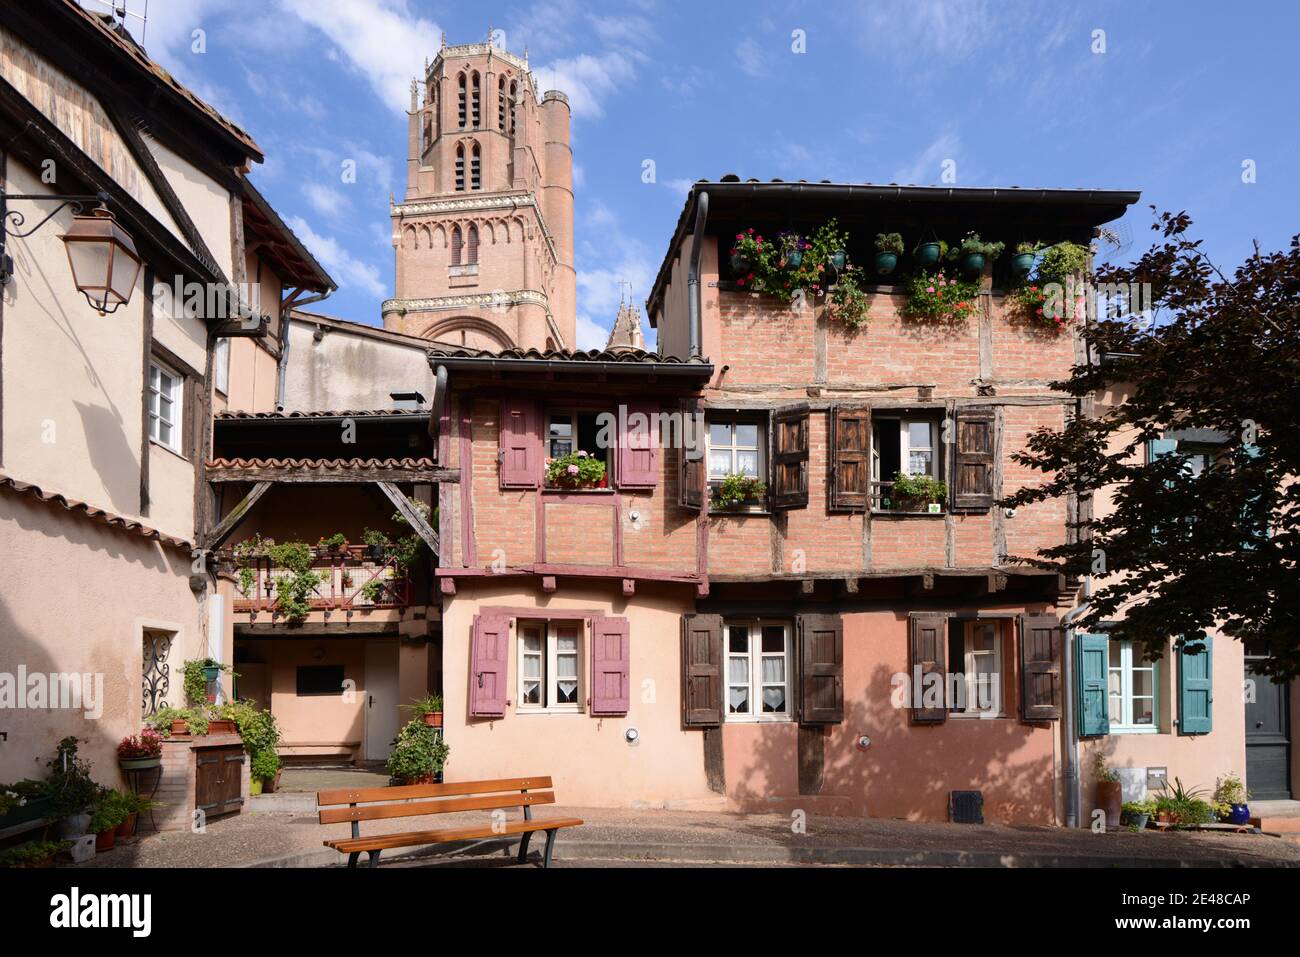 Beffroi de la cathédrale Saint Cecilia, maisons de ville anciennes et place dans La vieille ville ou quartier historique d'Albi Tarn France Banque D'Images